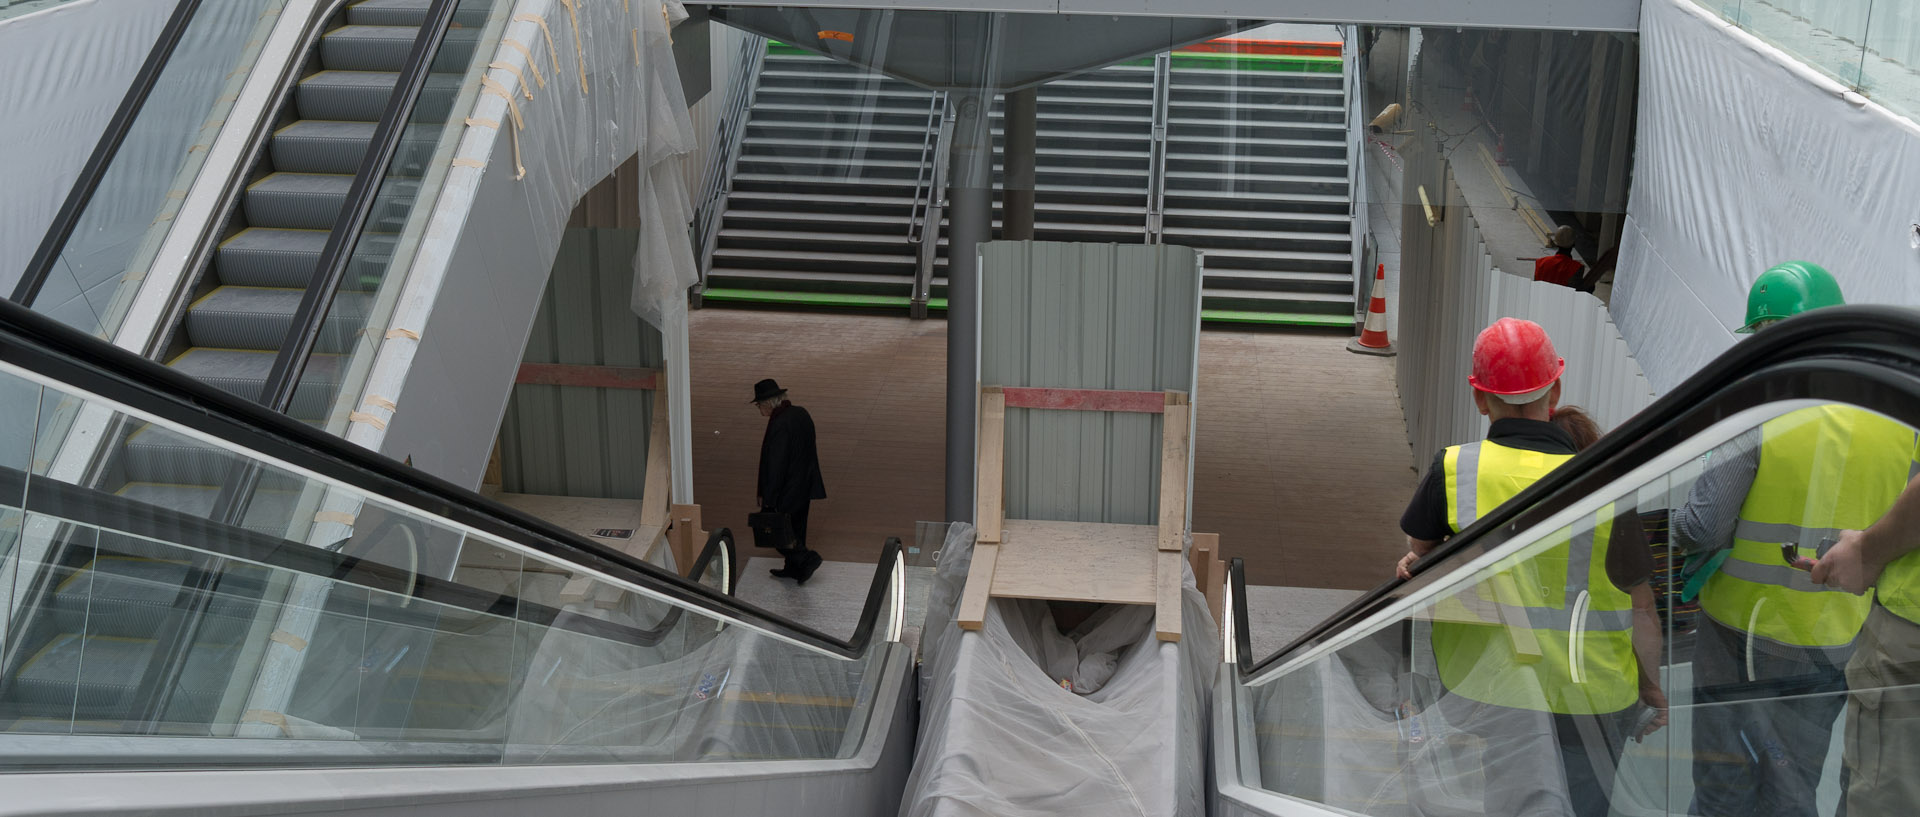 Nouveaux escalators, salle des pas perdus de la gare Saint-Lazare, à Paris.